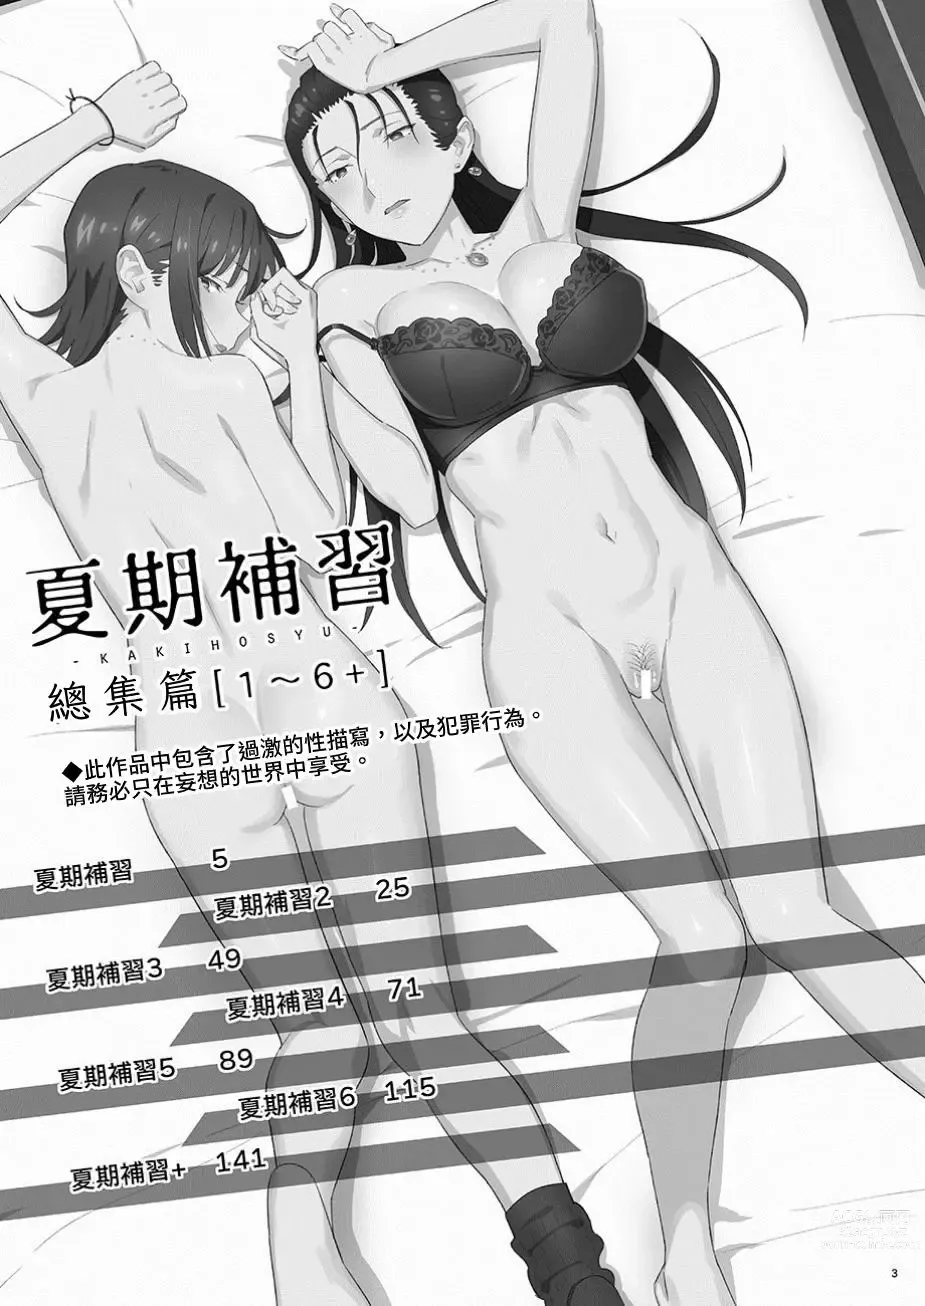 Page 3 of doujinshi Kaki Hoshuu Soushuuhen 1~6+